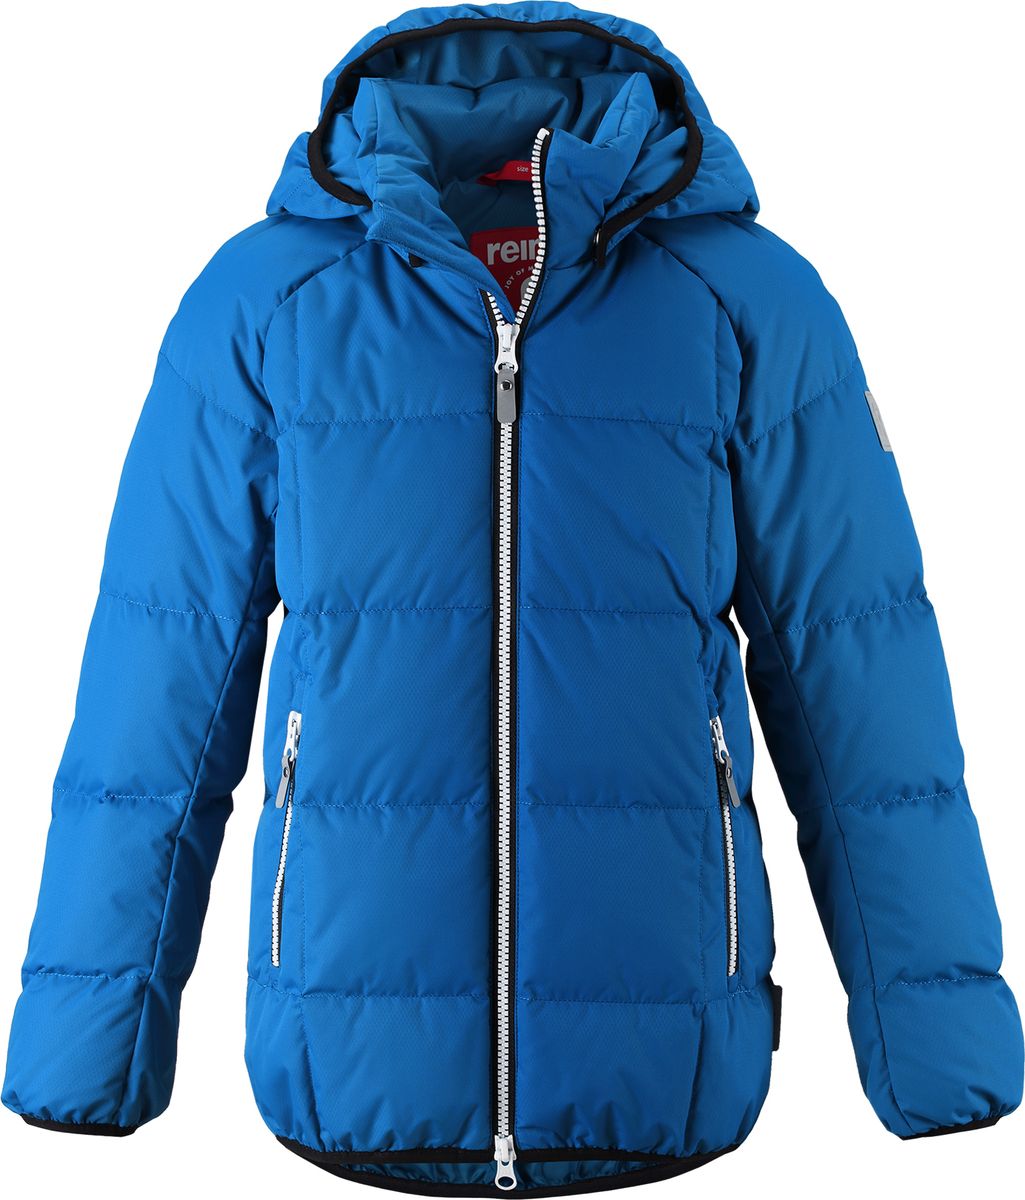 Куртка для мальчика Reima Jord, цвет: синий. 5313596680. Размер 104